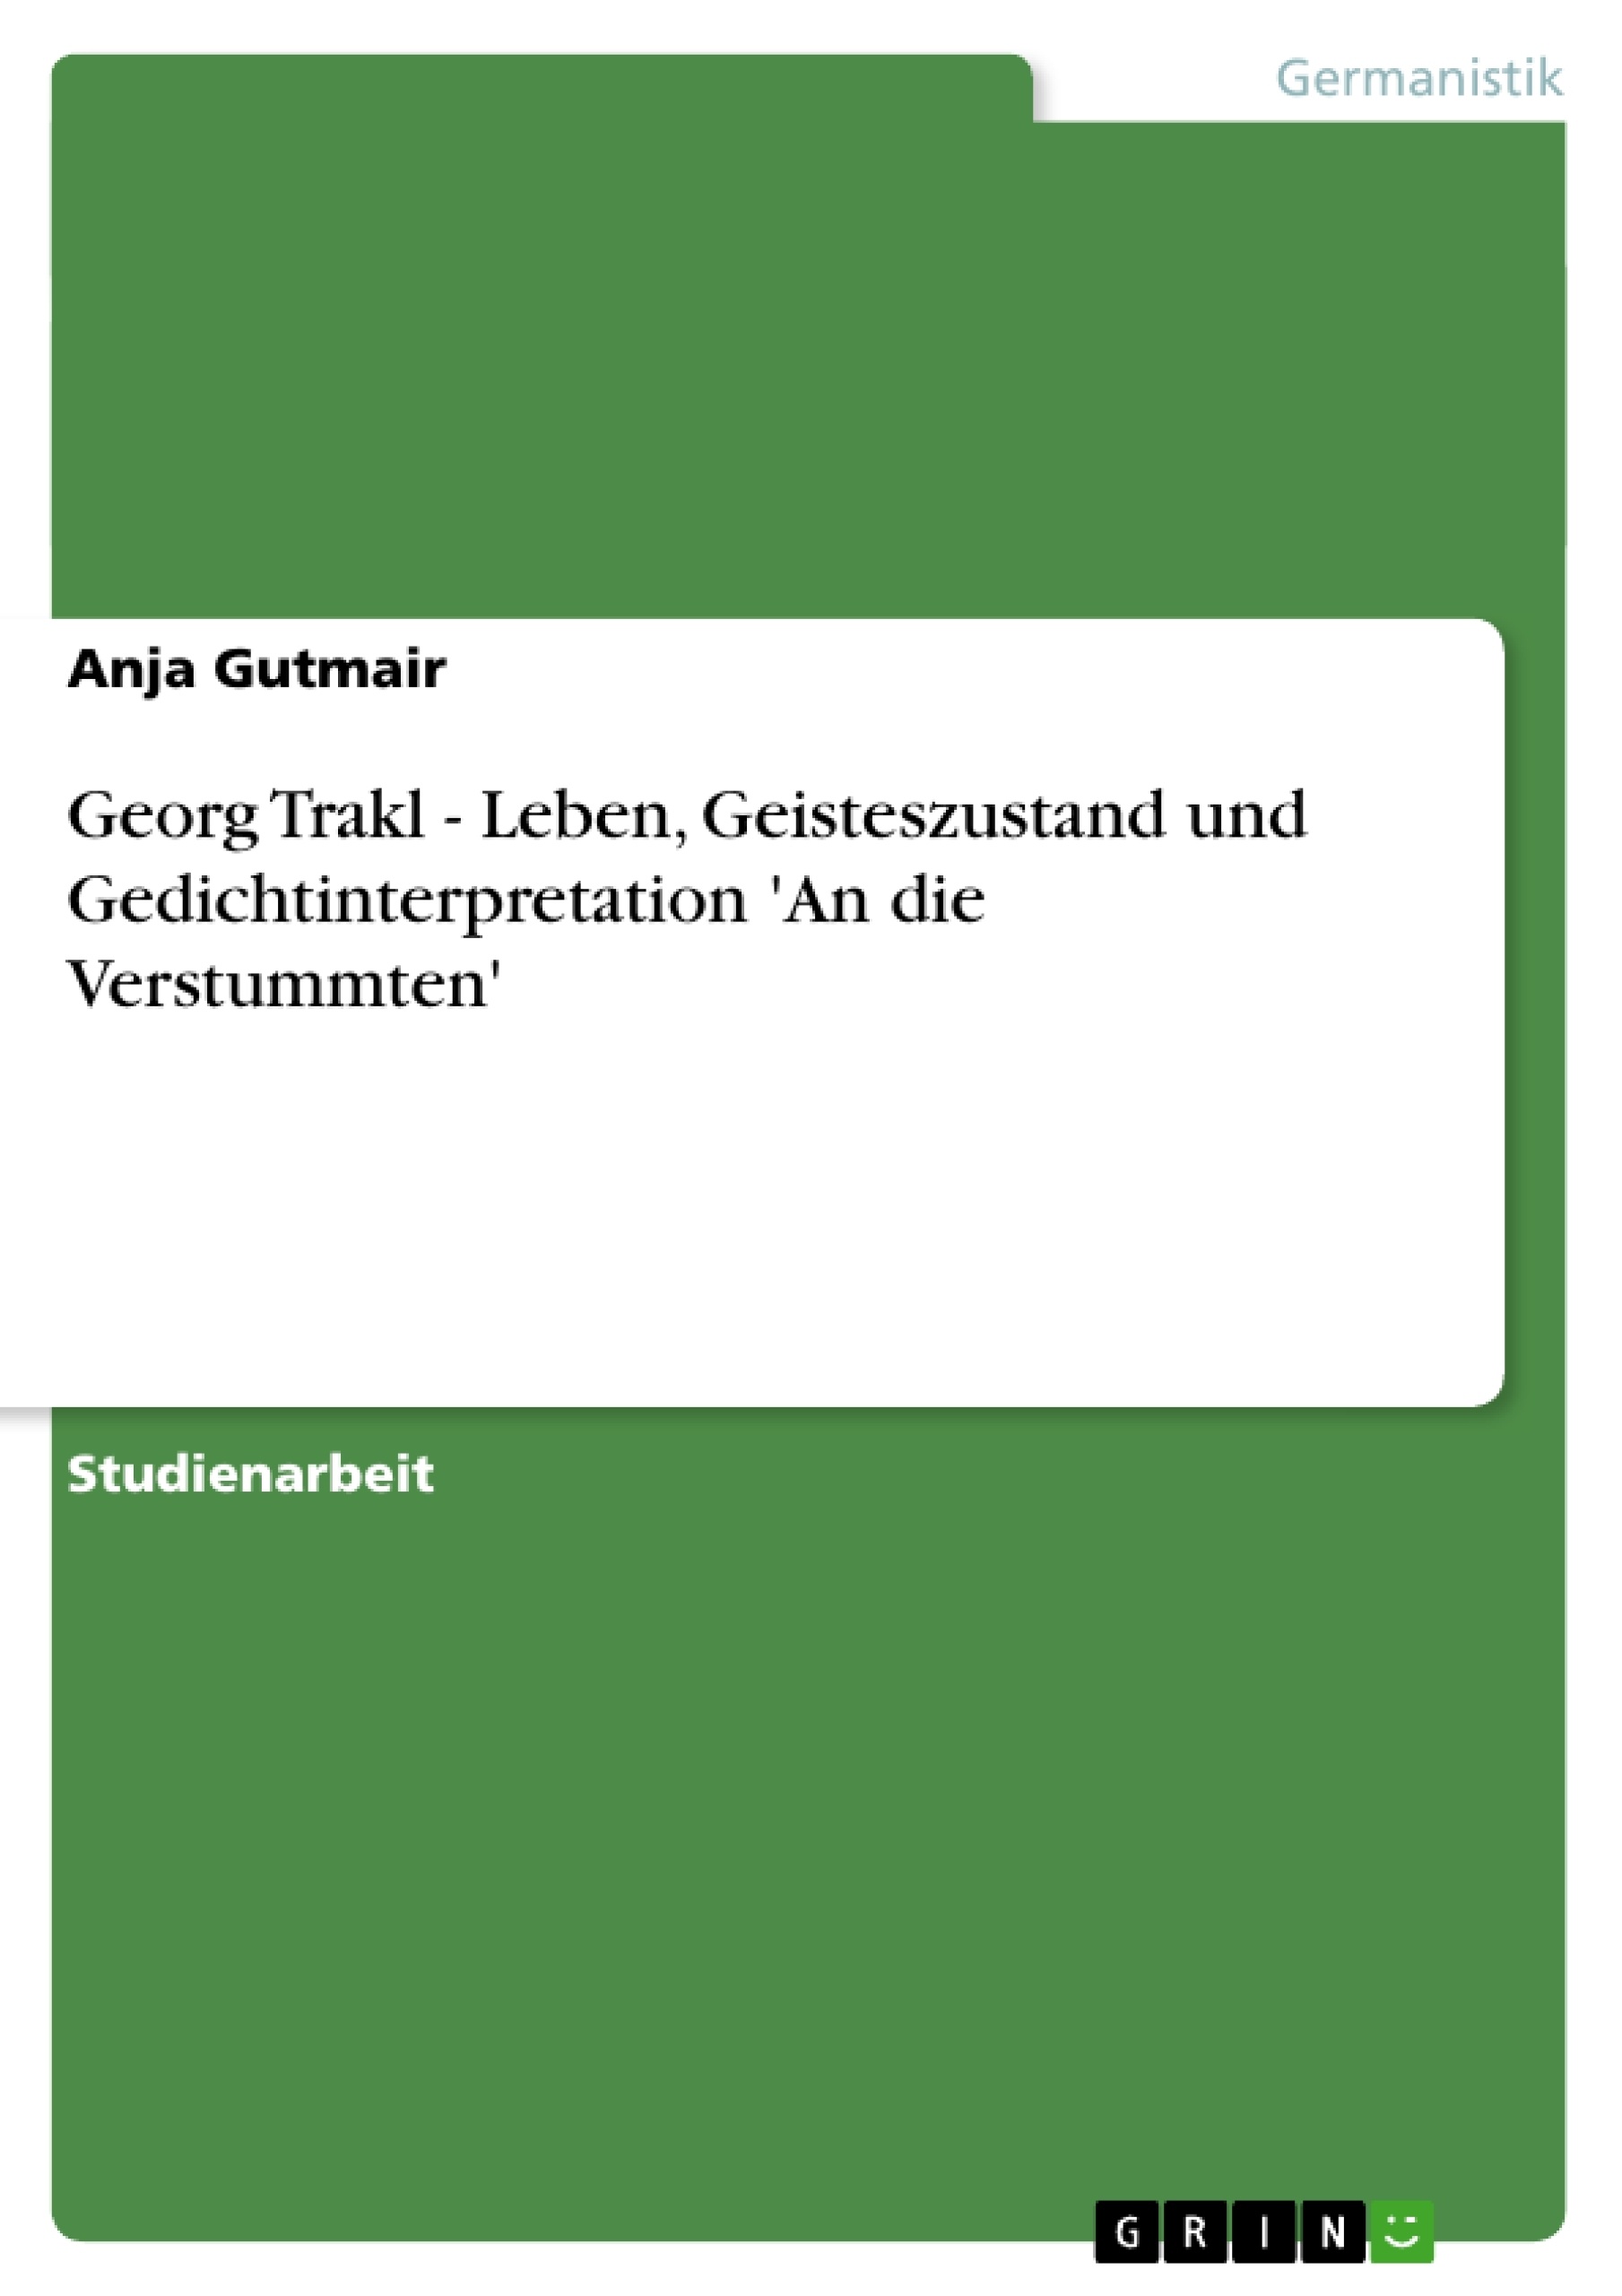 Titre: Georg Trakl - Leben, Geisteszustand und Gedichtinterpretation 'An die Verstummten'